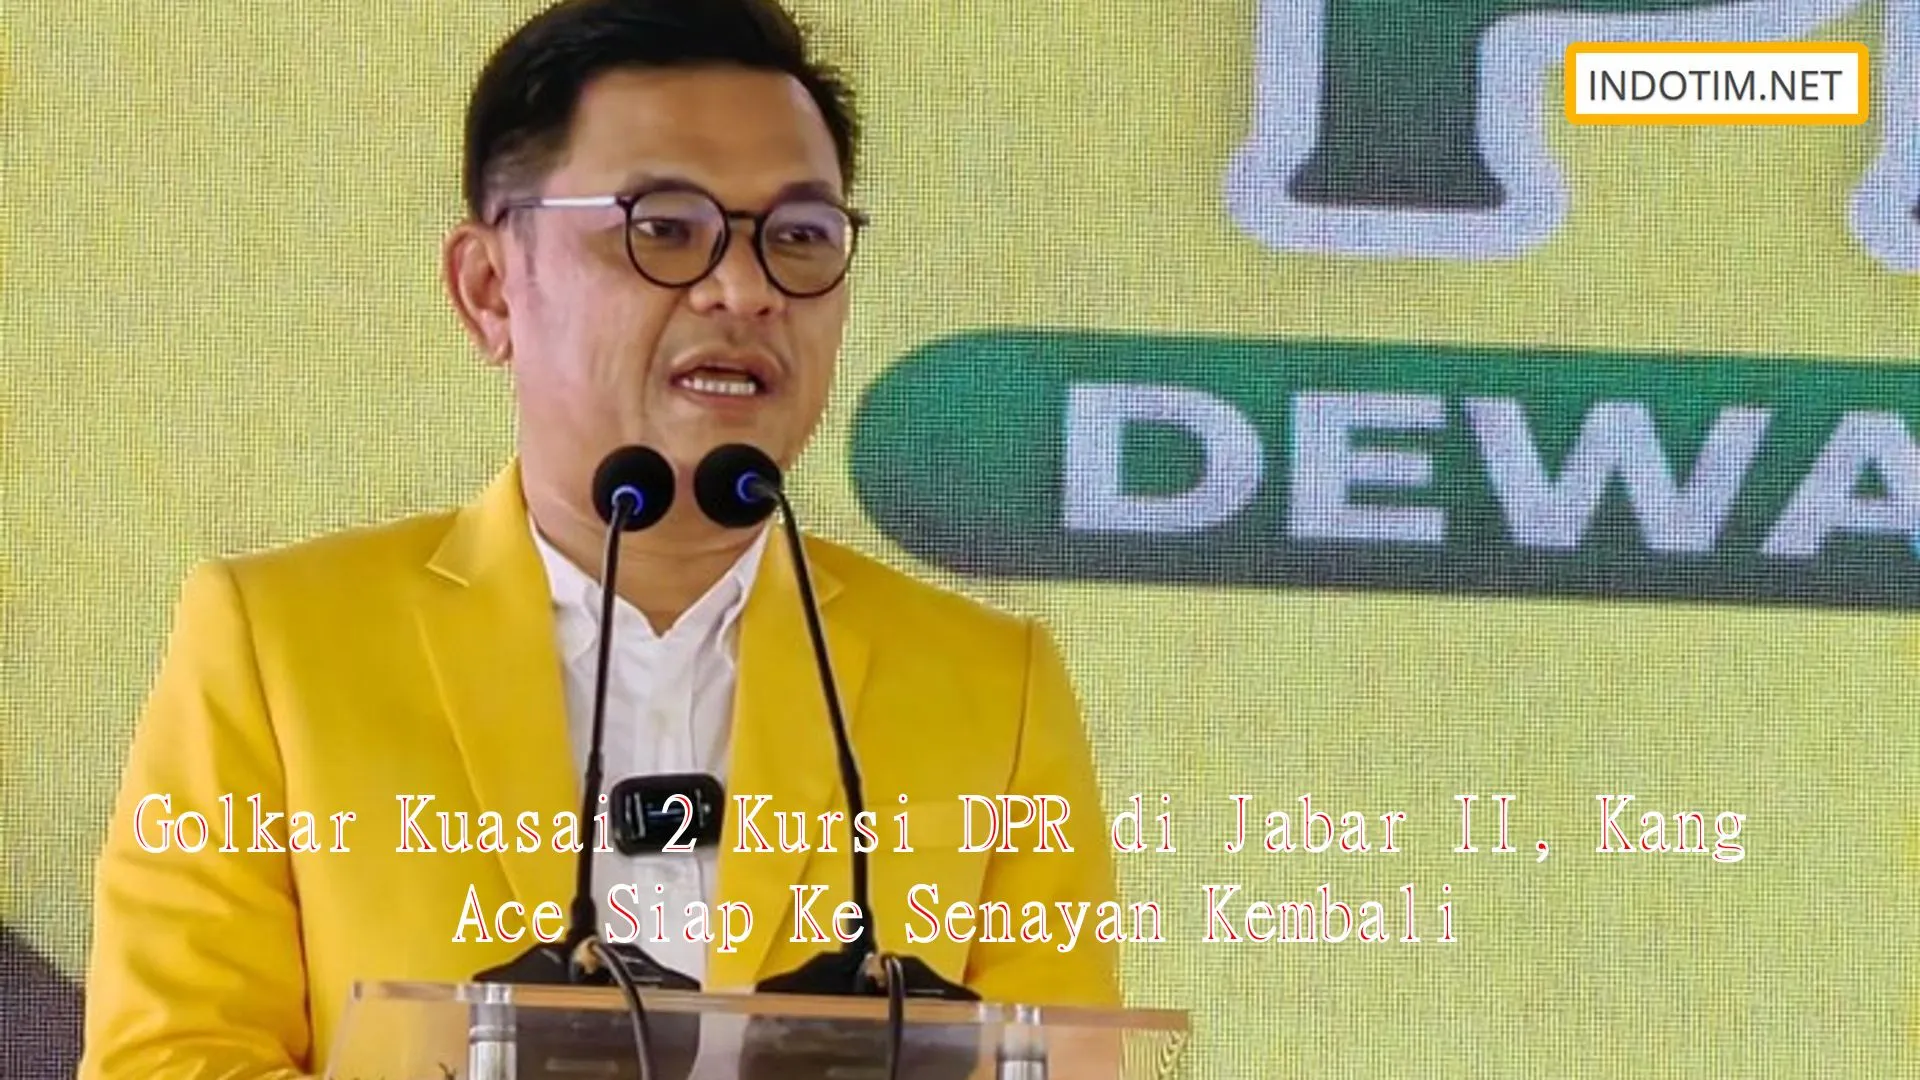 Golkar Kuasai 2 Kursi DPR di Jabar II, Kang Ace Siap Ke Senayan Kembali